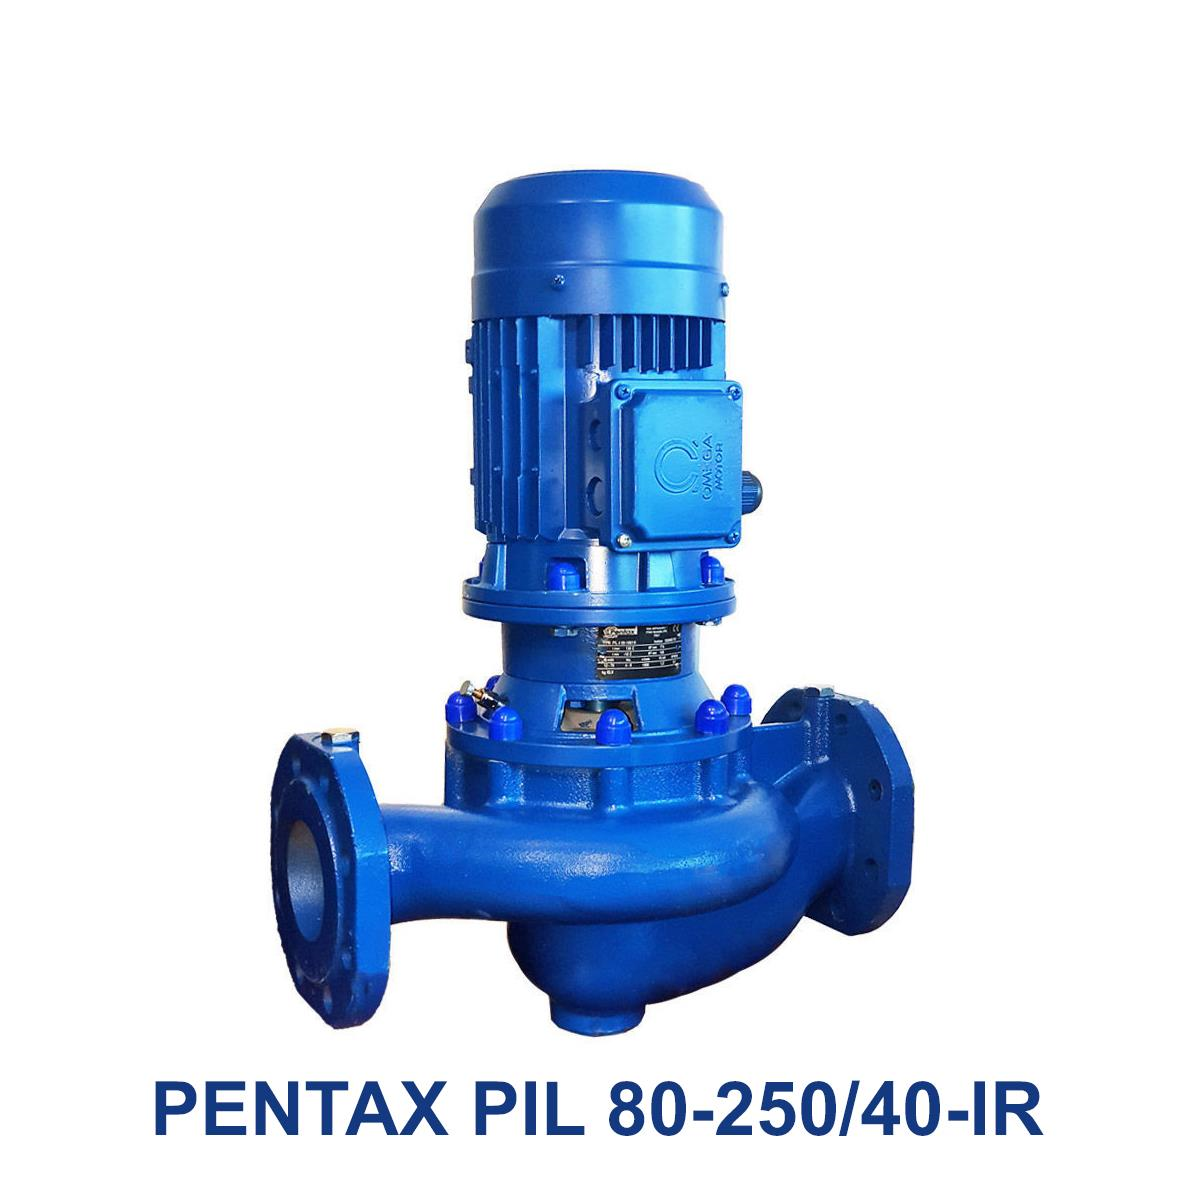 PENTAX-PIL-80-250-40-IR